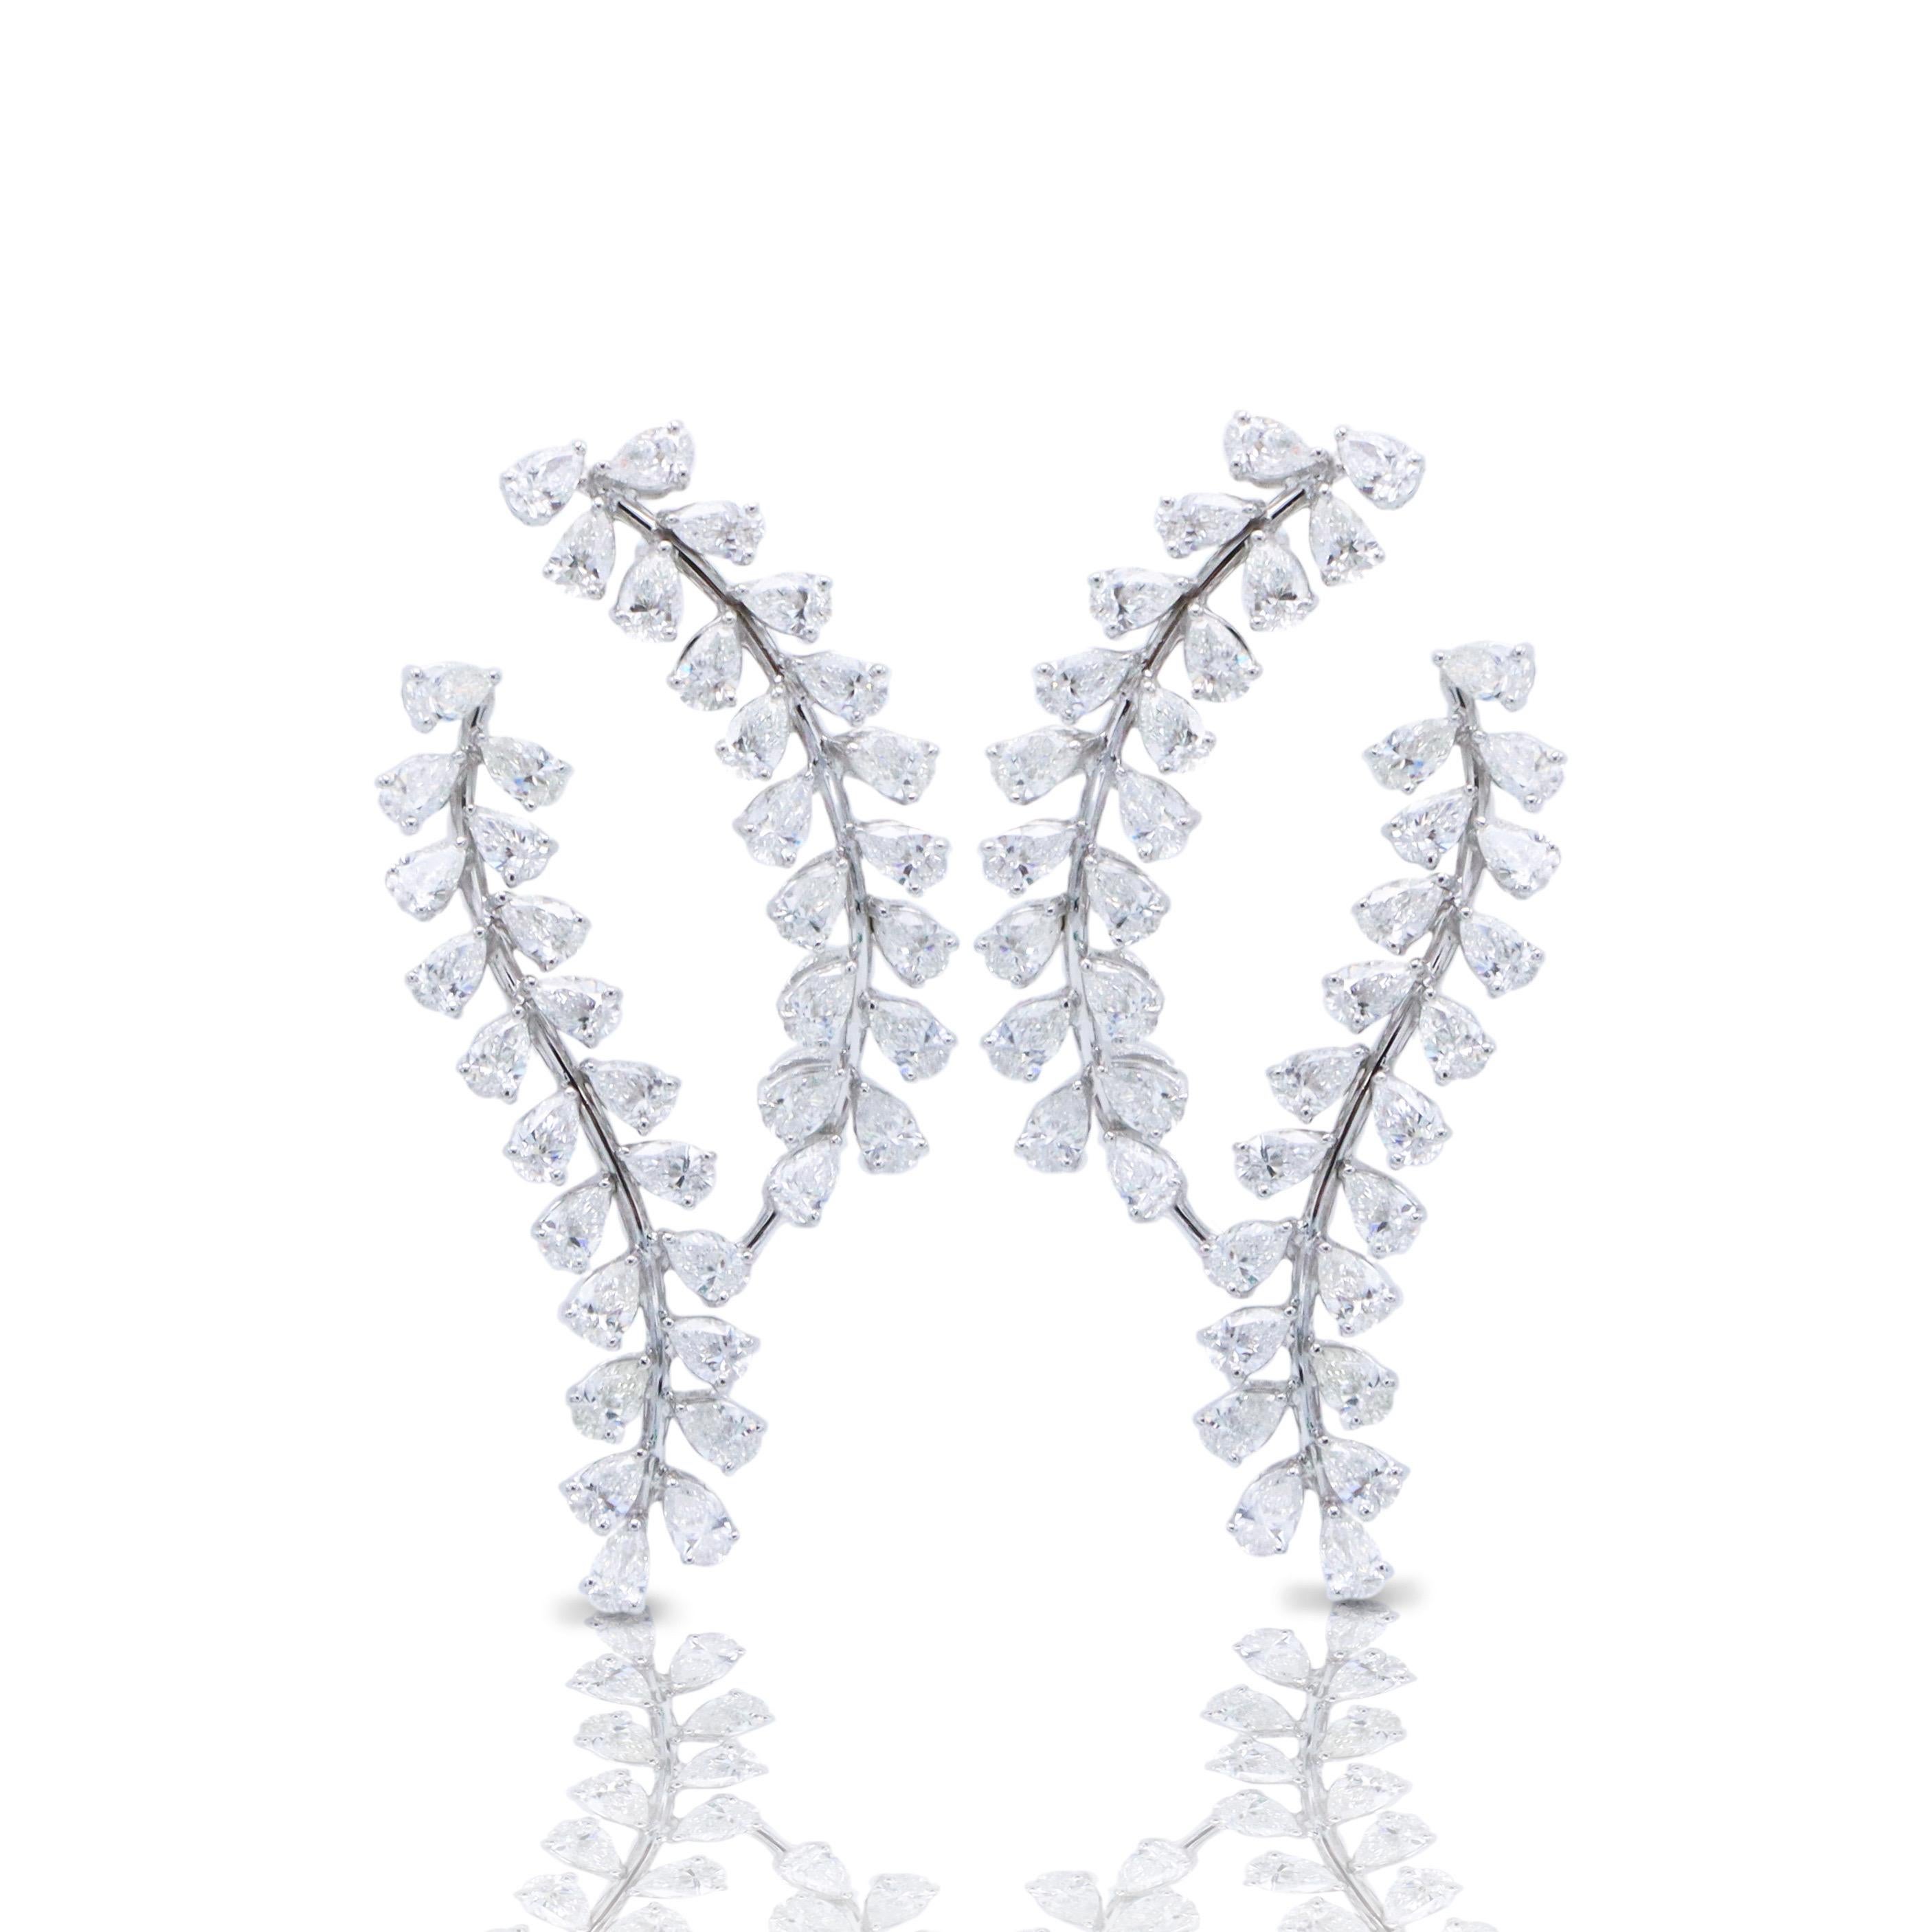 Aus dem Tresor von Emilio Jewelry in der berühmten Fifth Avenue in New York,
ein sehr einzigartiger, eleganter, femininer Ohrring, handgefertigt mit wunderschönen birnenförmigen D-F Vvs Diamanten. 
 Handgefertigt im Emilio Jewelry Atelier, das sich